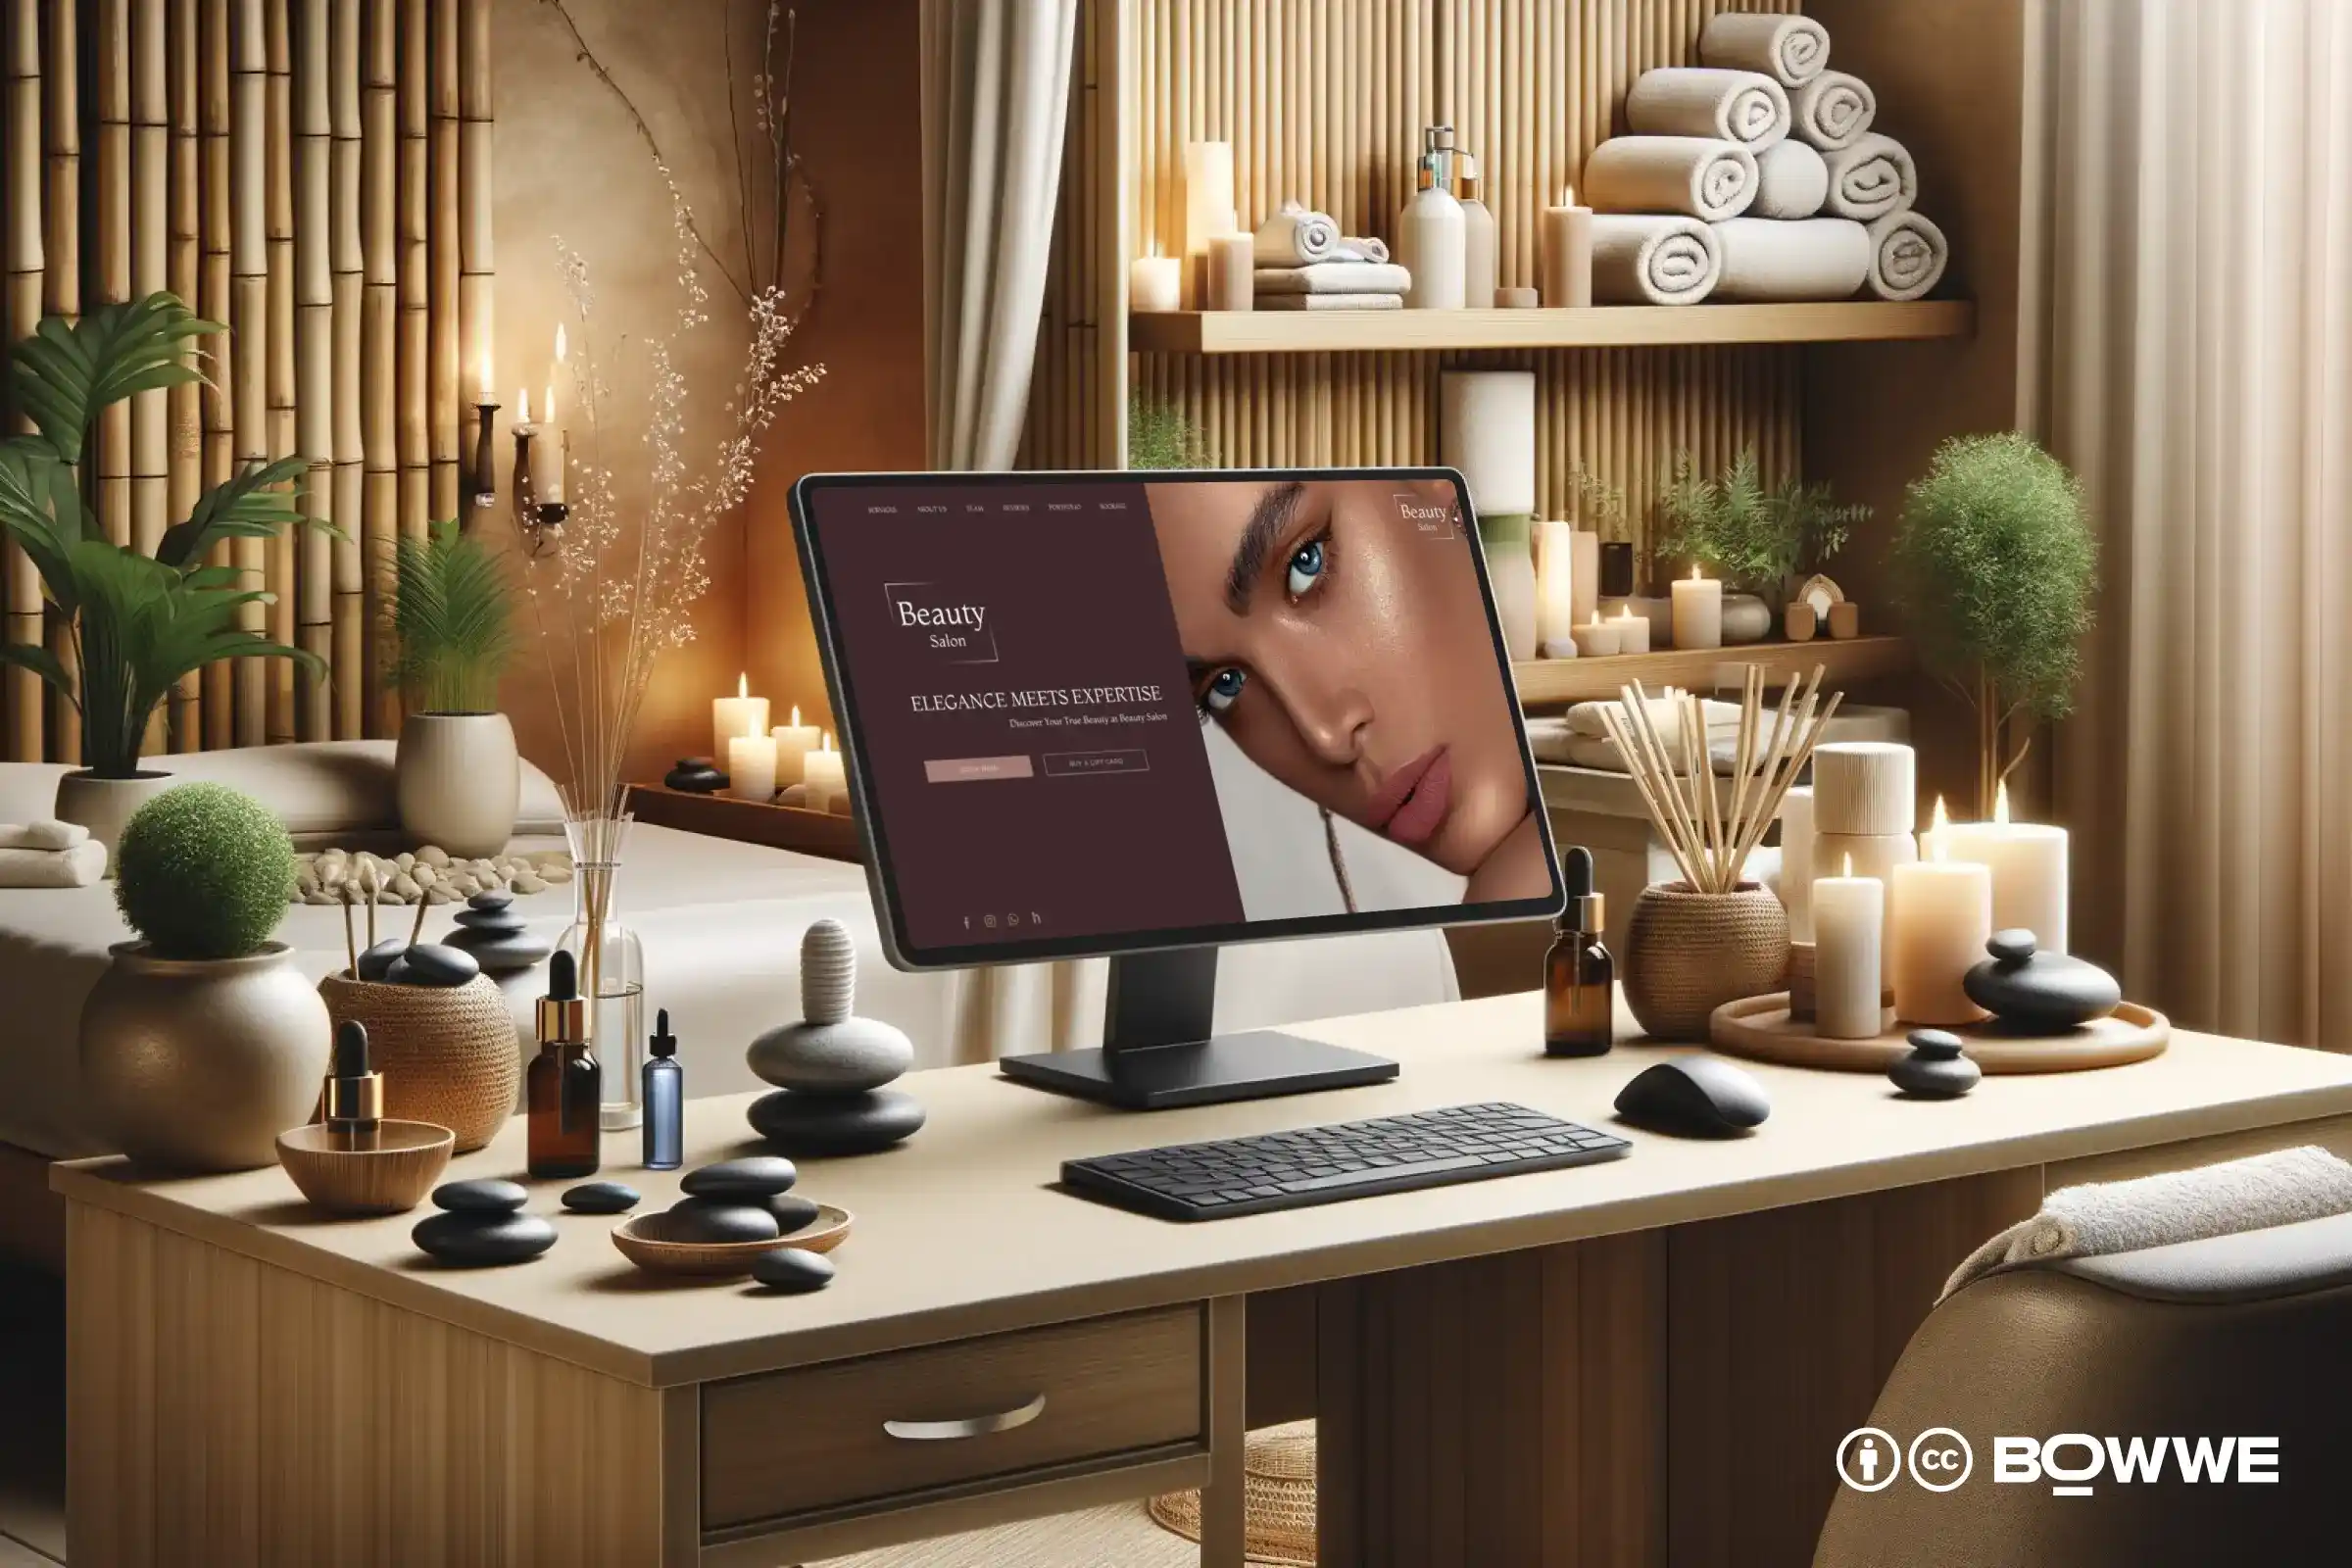 ноутбук стоит на столе с элегантным шаблоном сайта для салонов красоты на экране